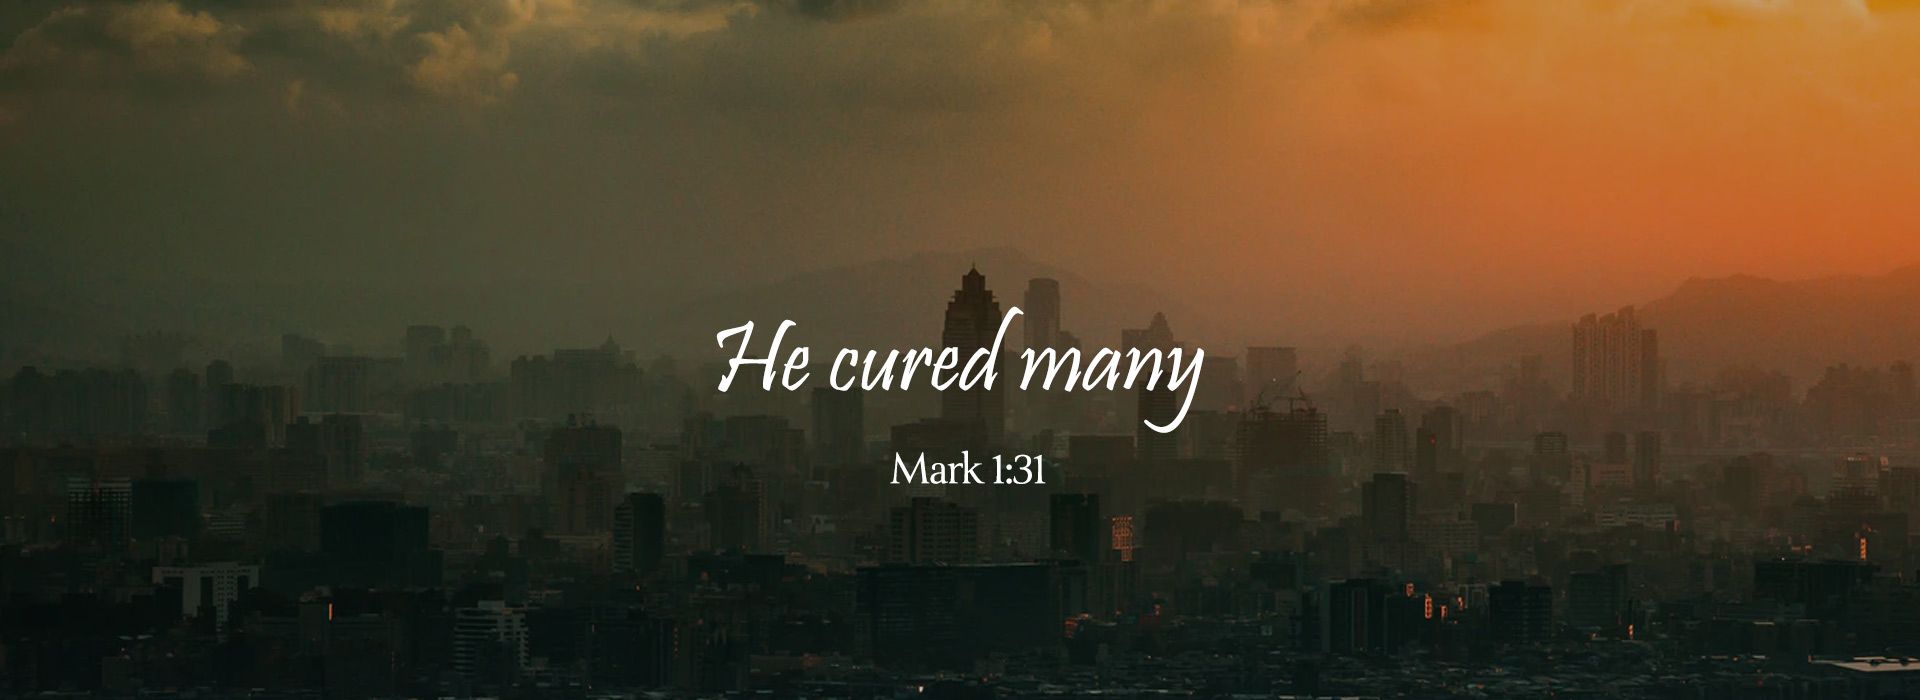 Mark 1:31